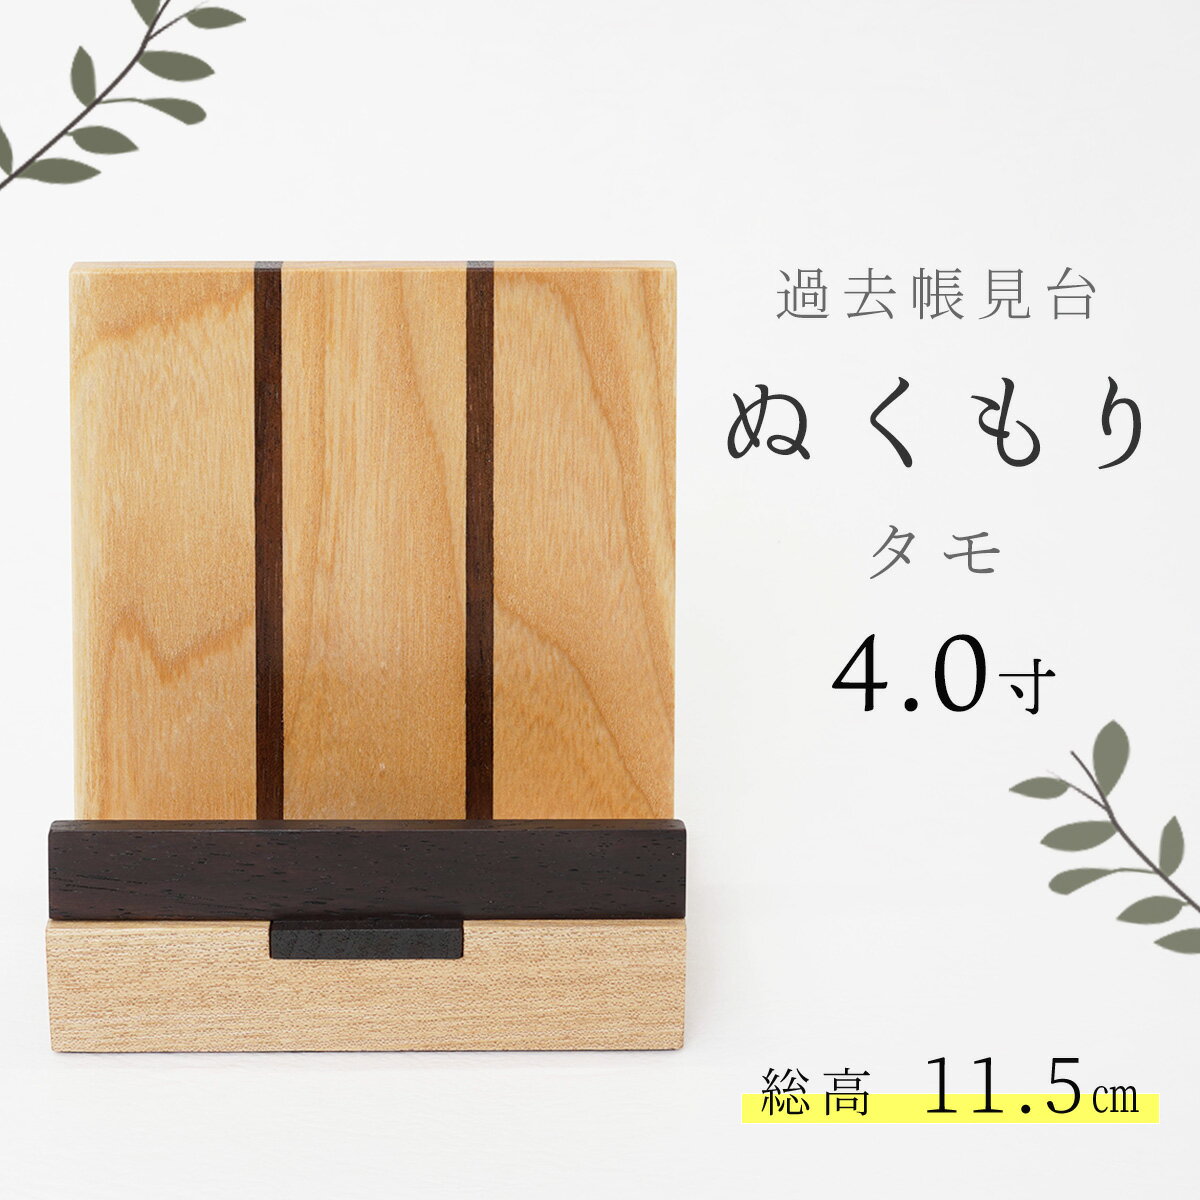 見台 過去帳台 モダン おしゃれ 木製 「ぬくもり4.0寸」 タモ 4.0号 日本製